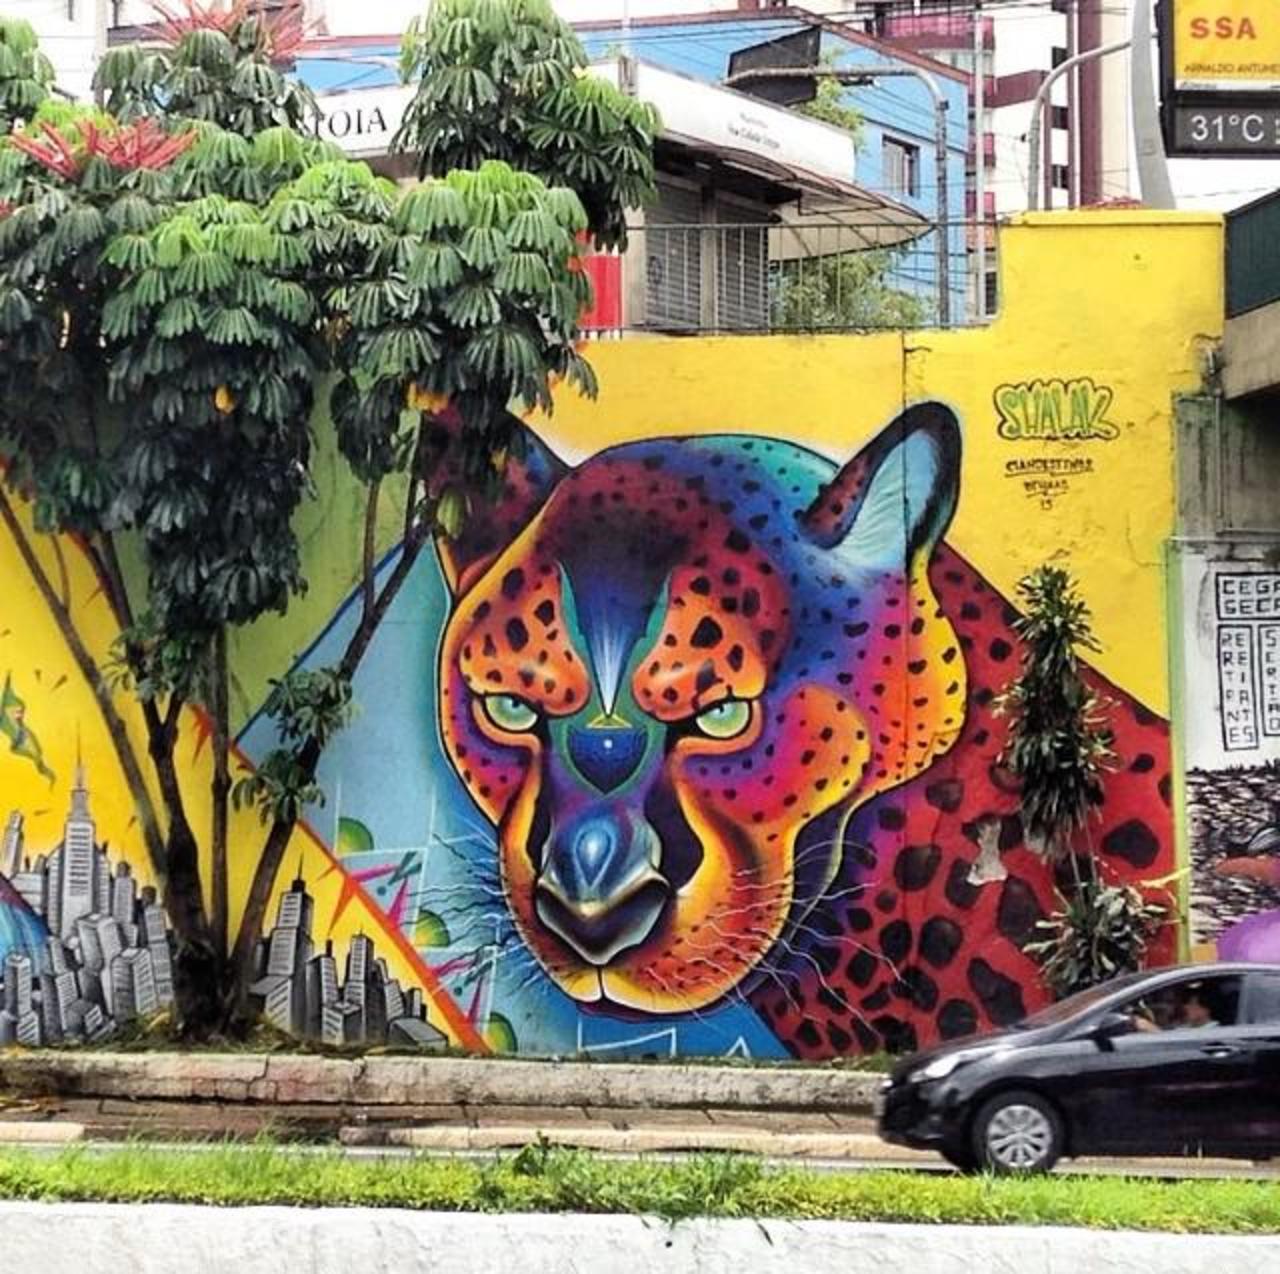 ShalakAttack - São Paulo 

#art #graffiti #mural #streetart http://t.co/ac8rUJK7Og via @GoogleStreetArt